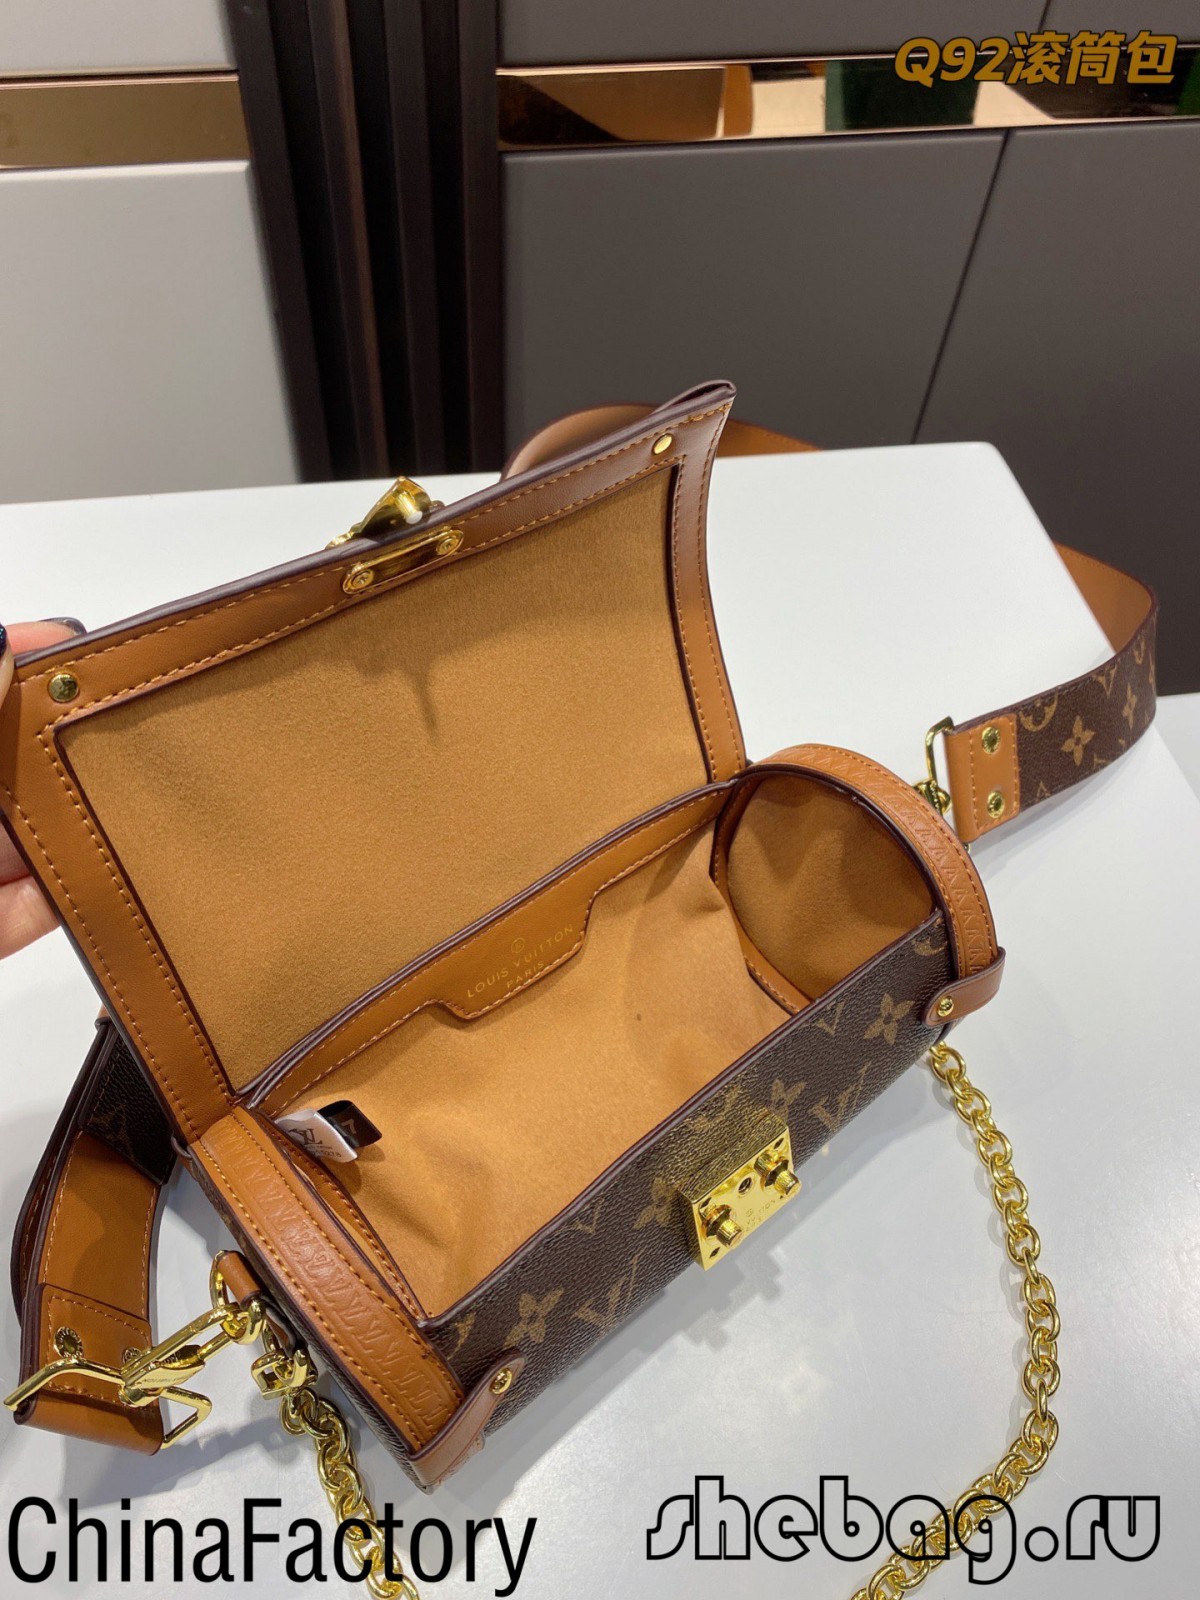 Репліка сумки Louis Vuitton вищої якості Китайська фабрика: LV Papillon Trunk (2022 Hottest) - Інтернет-магазин підробленої сумки Louis Vuitton найкращої якості, копія дизайнерської сумки ru